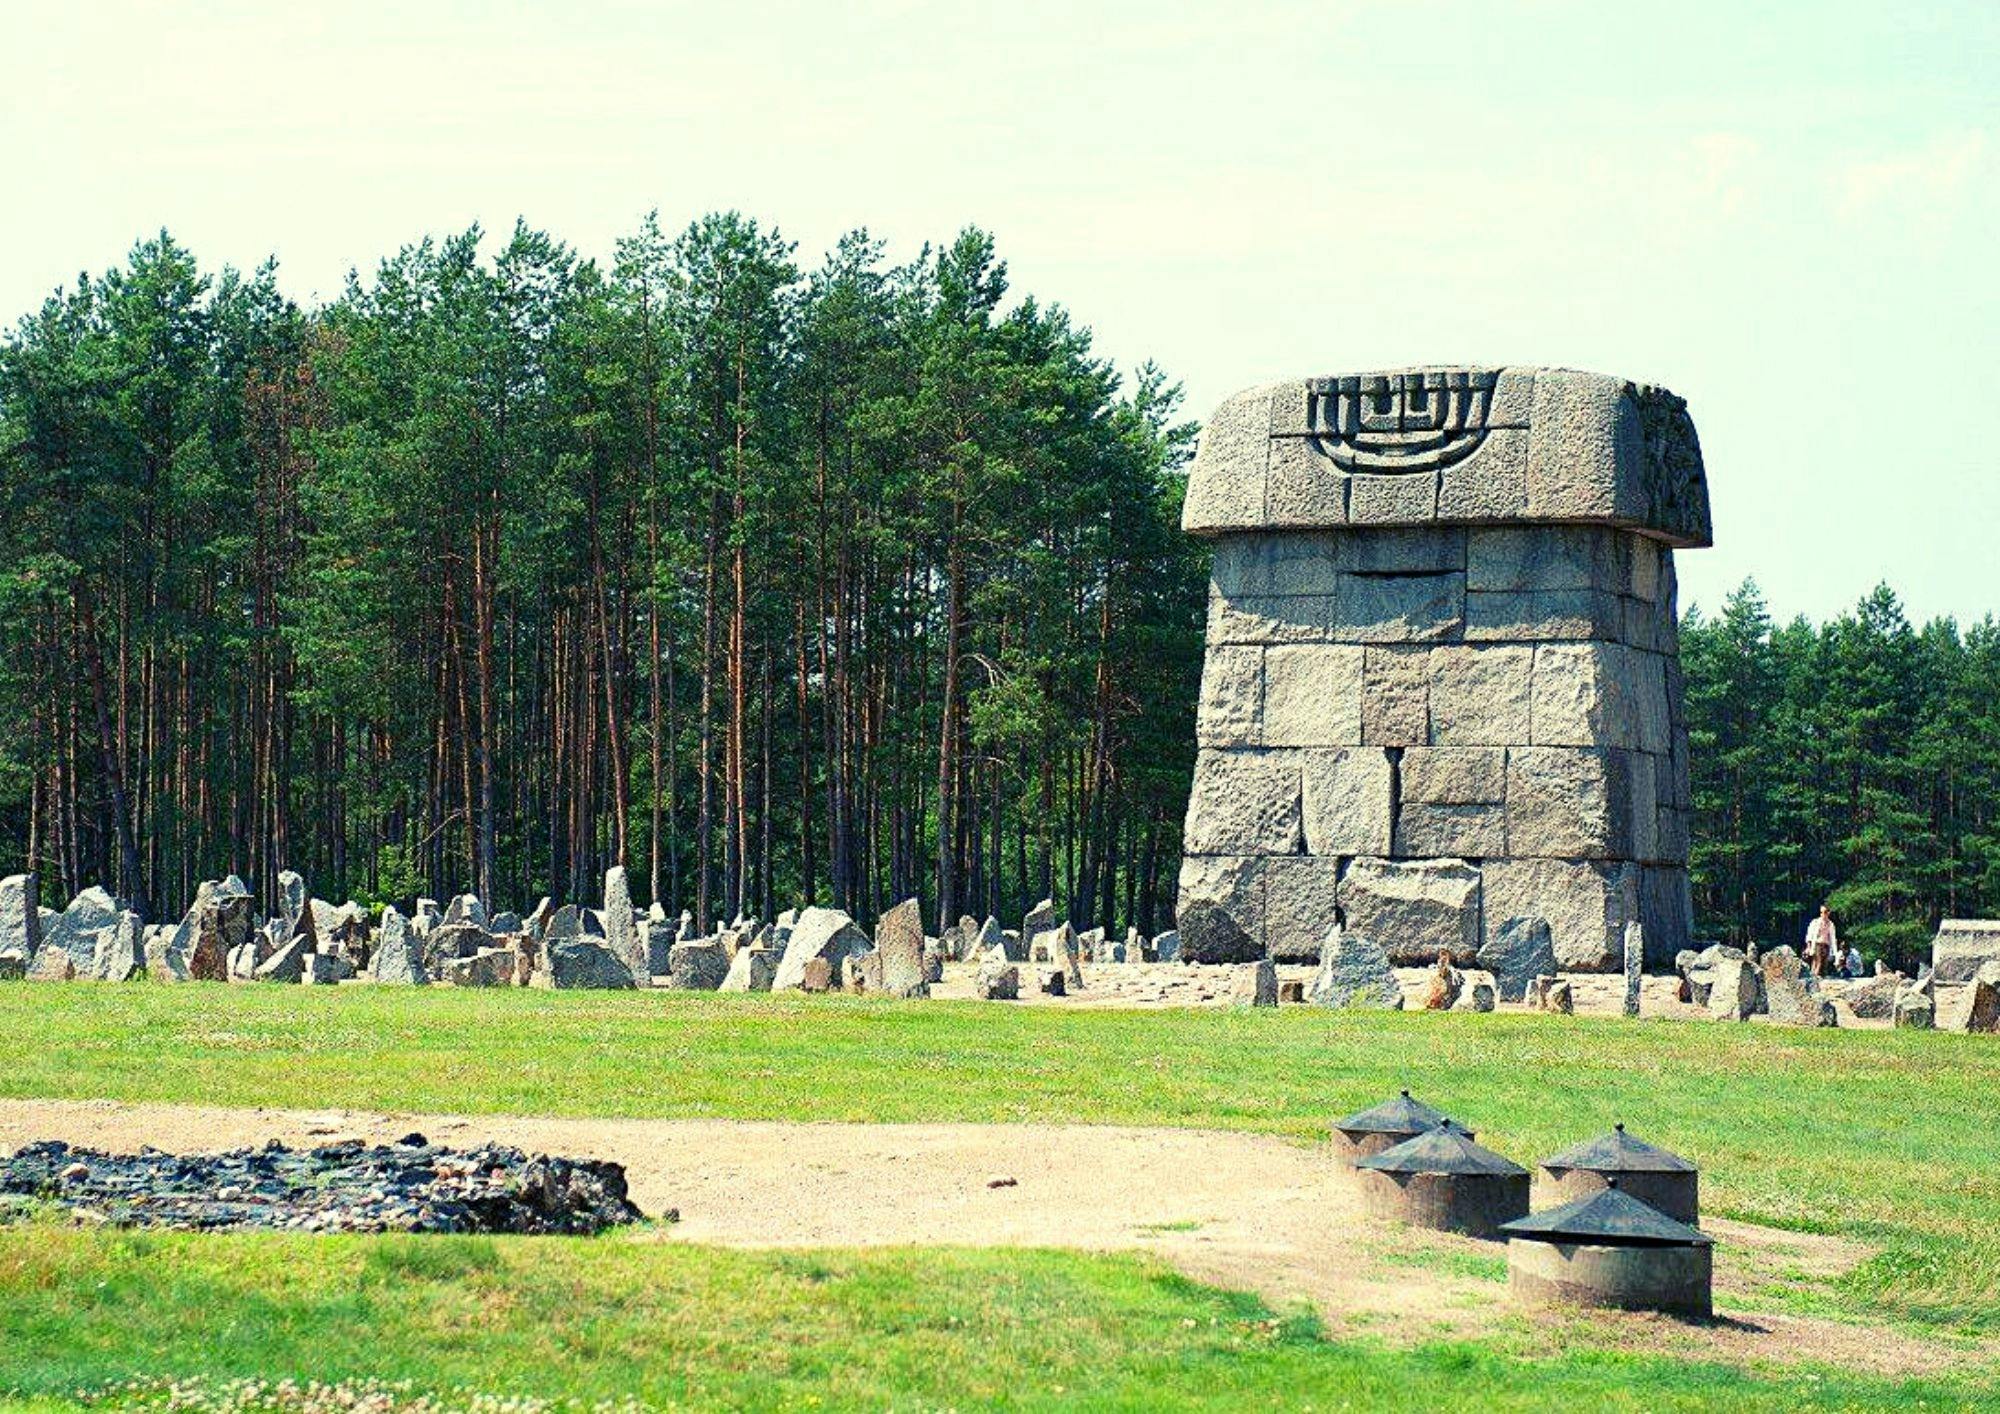 Treblinka Memorial tour van een halve dag in kleine groep vanuit Warschau